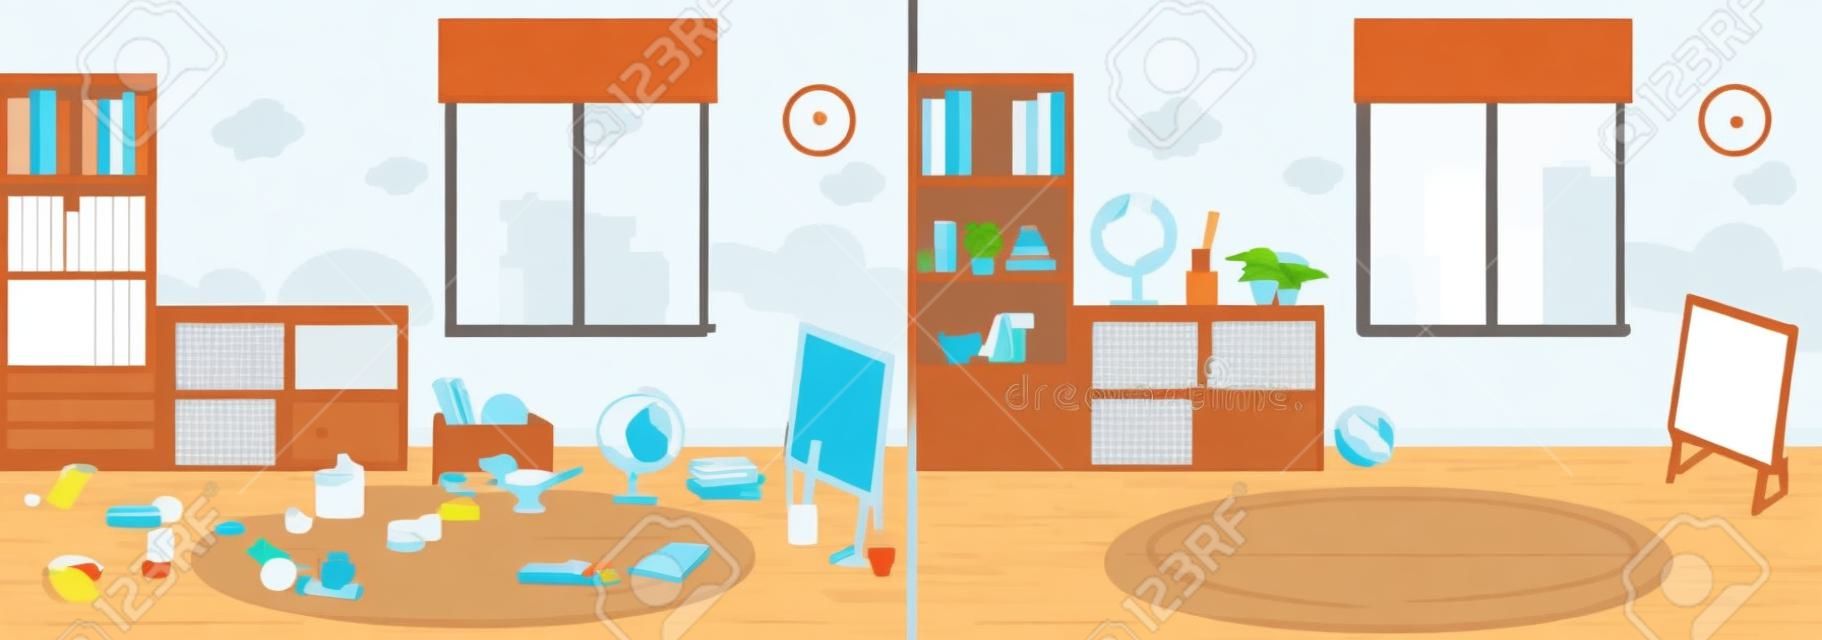 illustrazione vettoriale stanza pulita e sporca